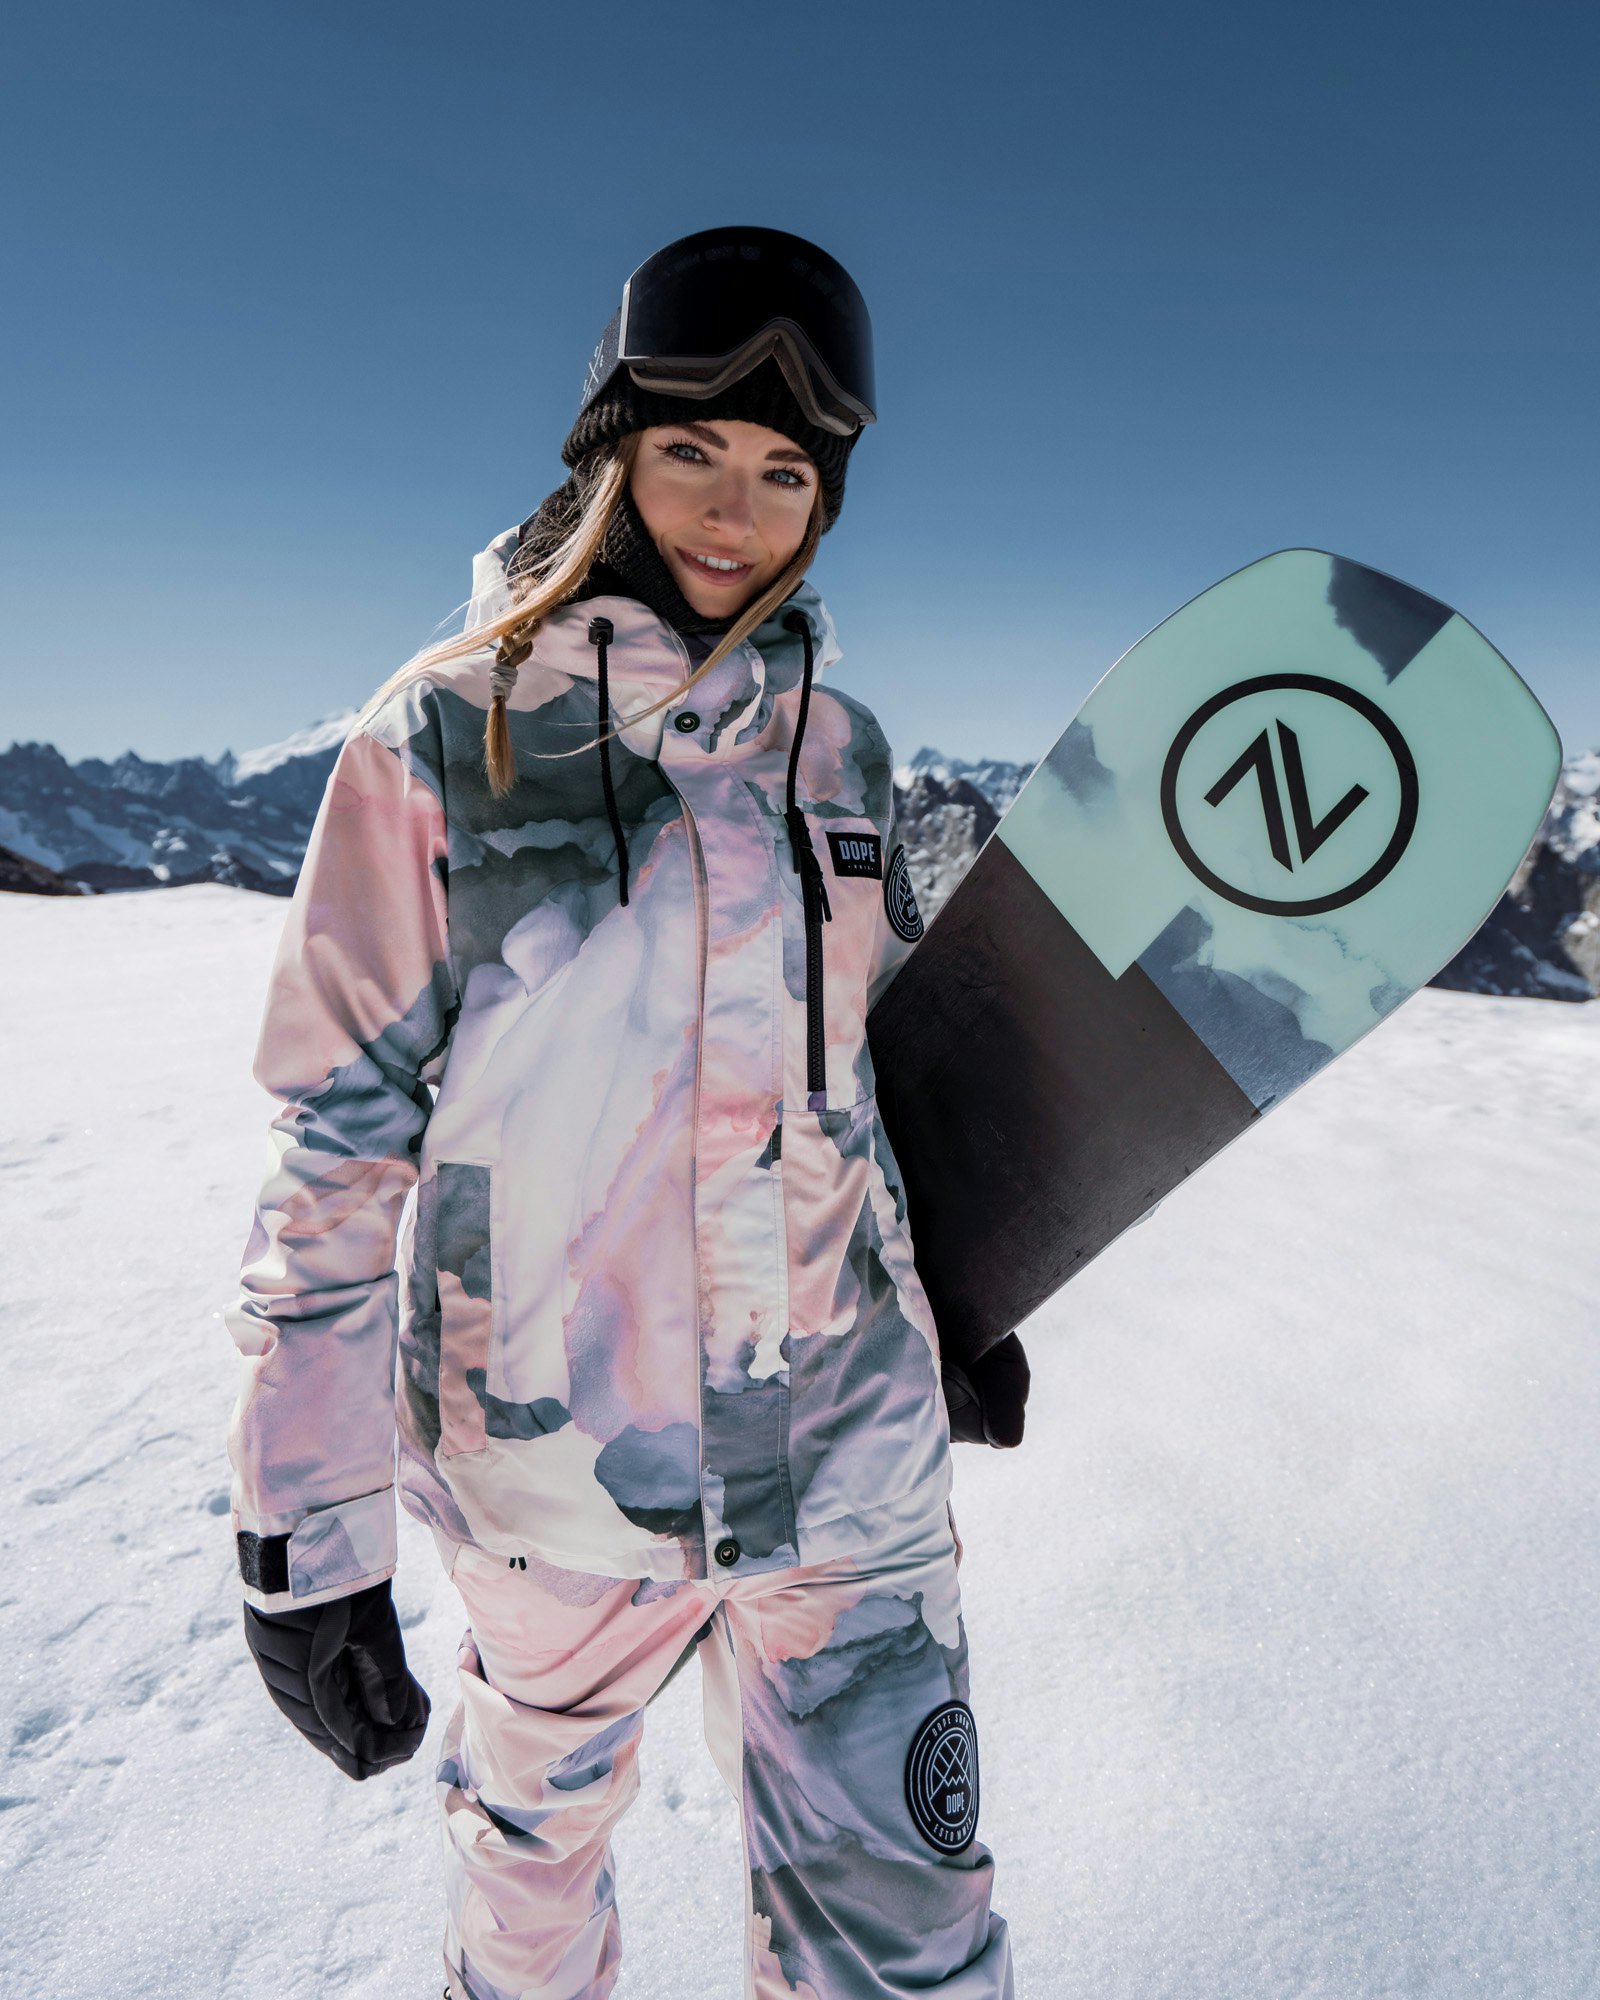 Welches Snowboard ist am besten für Anfänger geeignet?